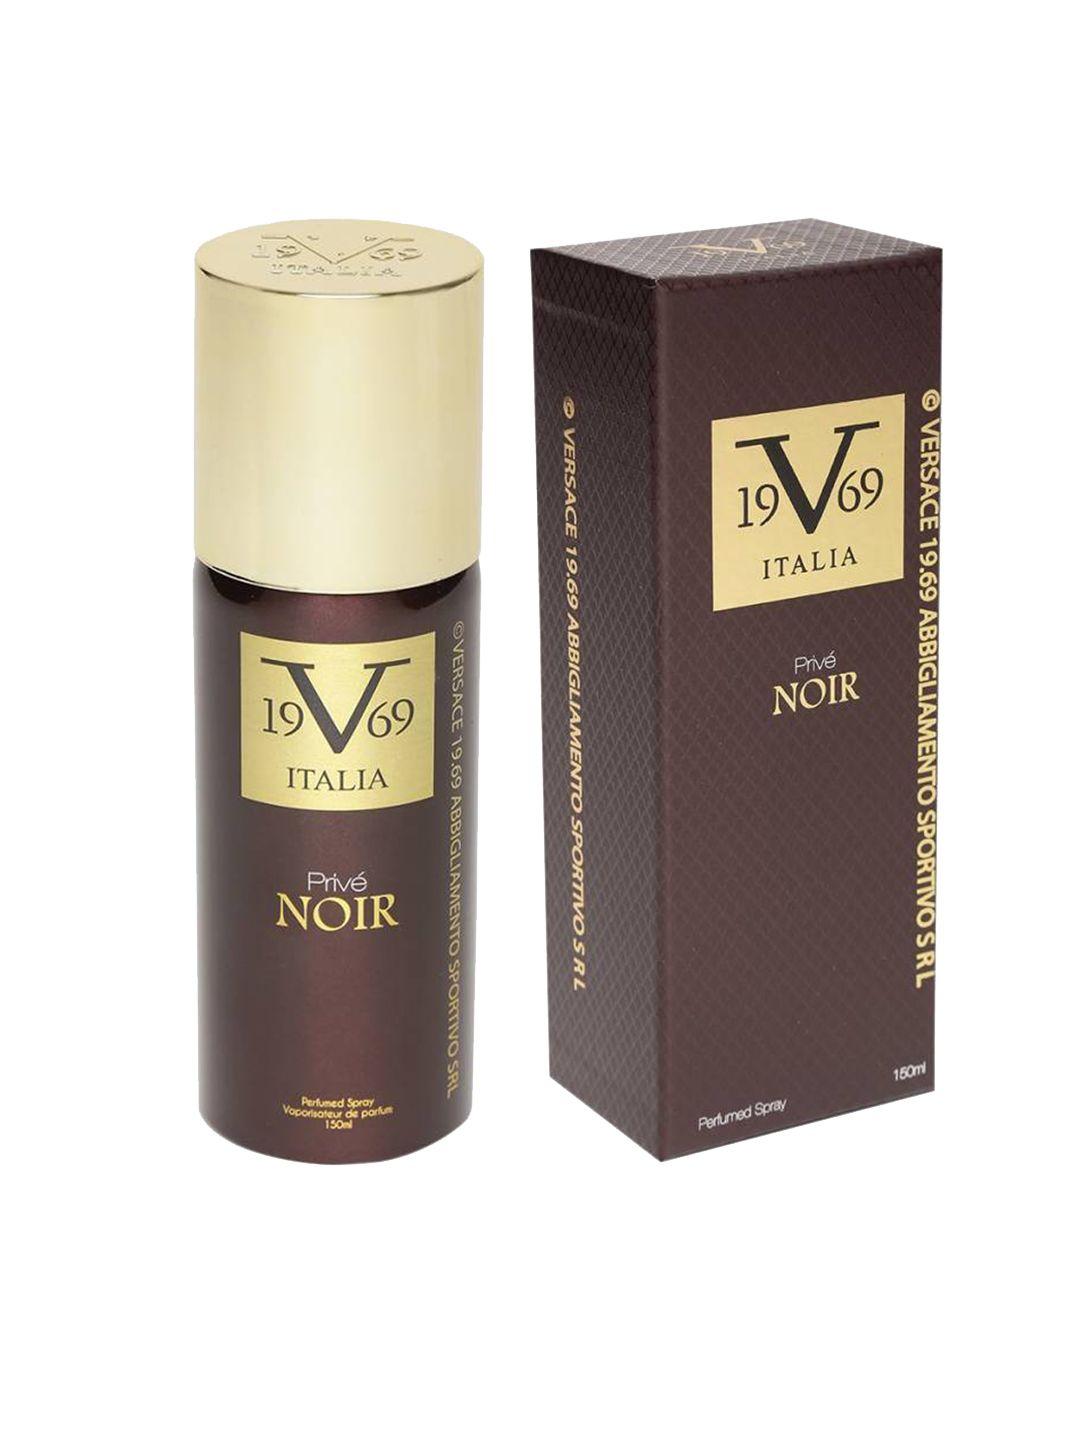 v1969 italia prive noir perfumed spray - 150ml